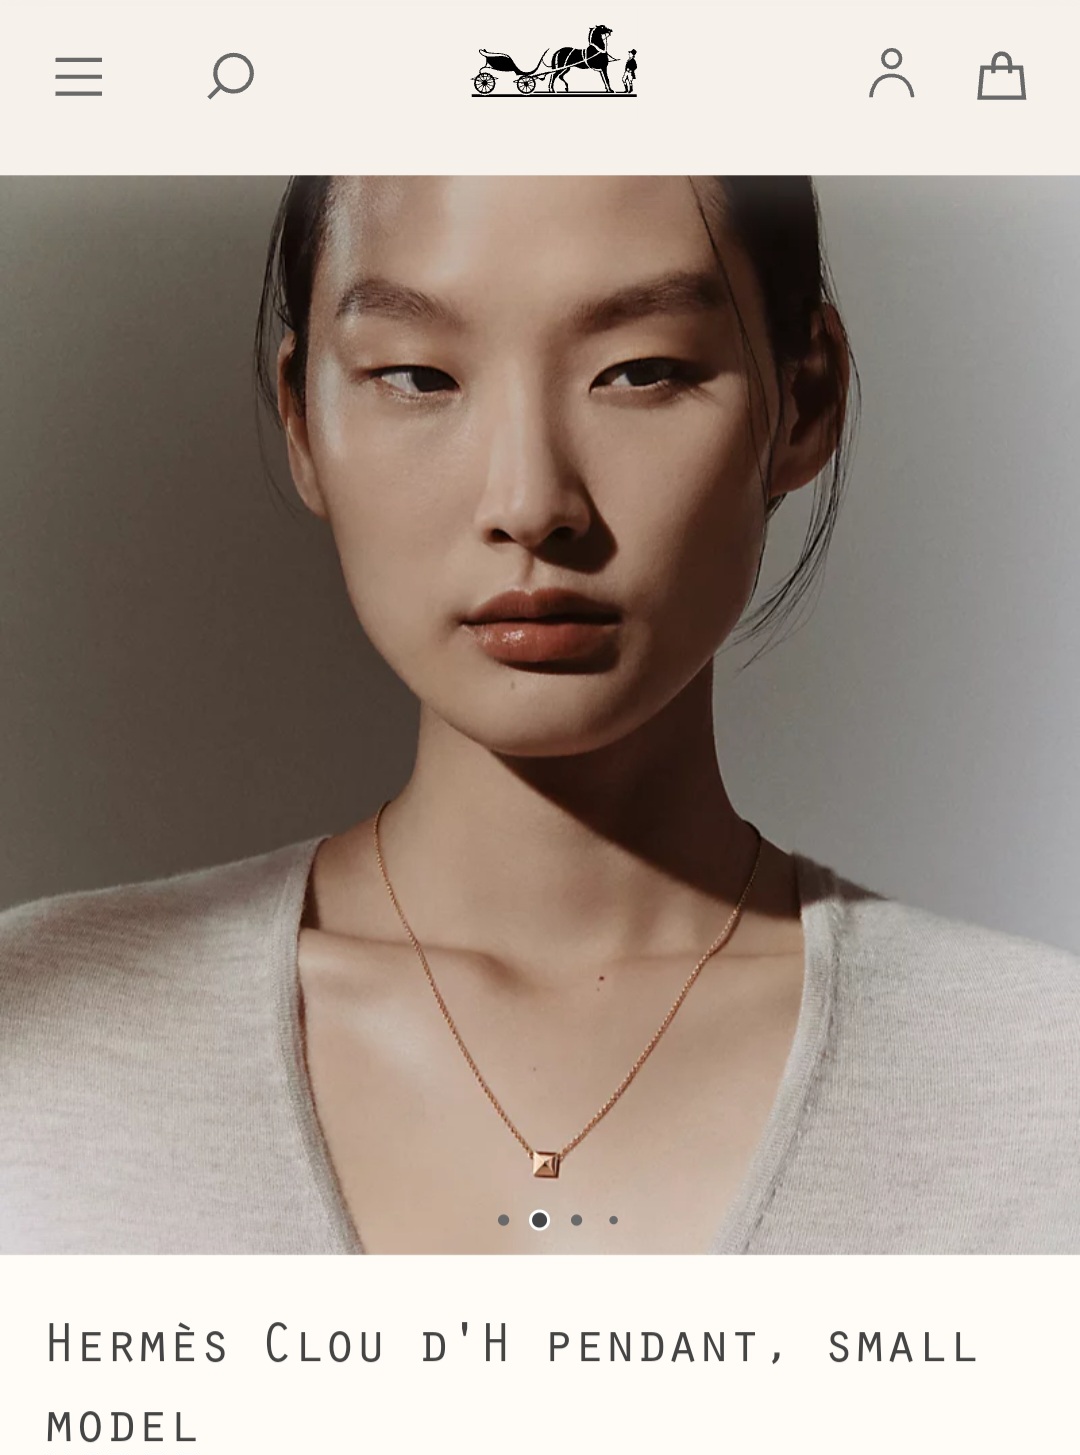 Hermès Clou d’H pendant, small model necklace